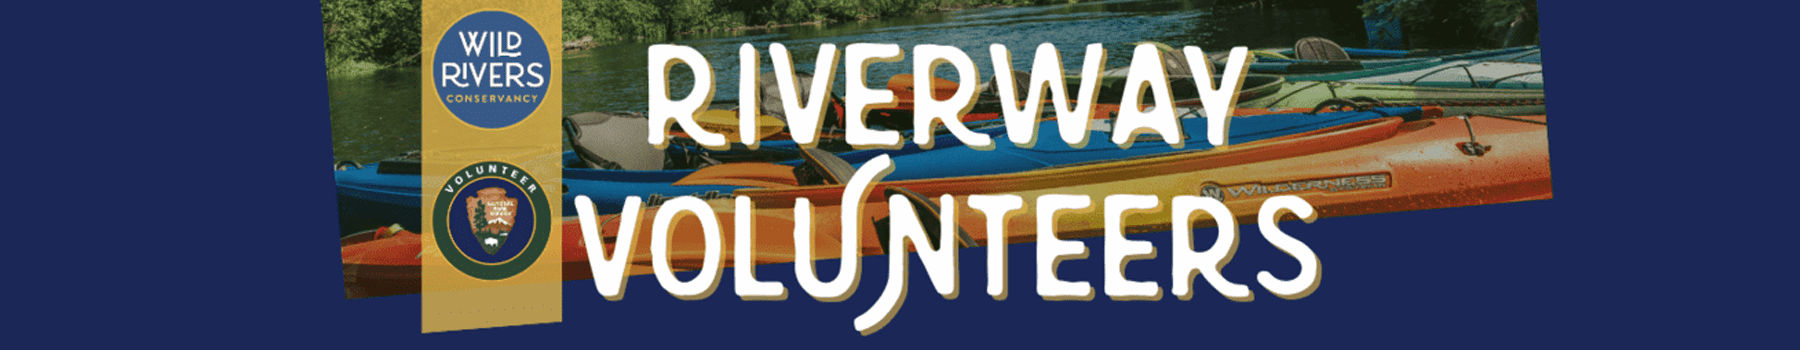 Riverway-volunteers-webbanner